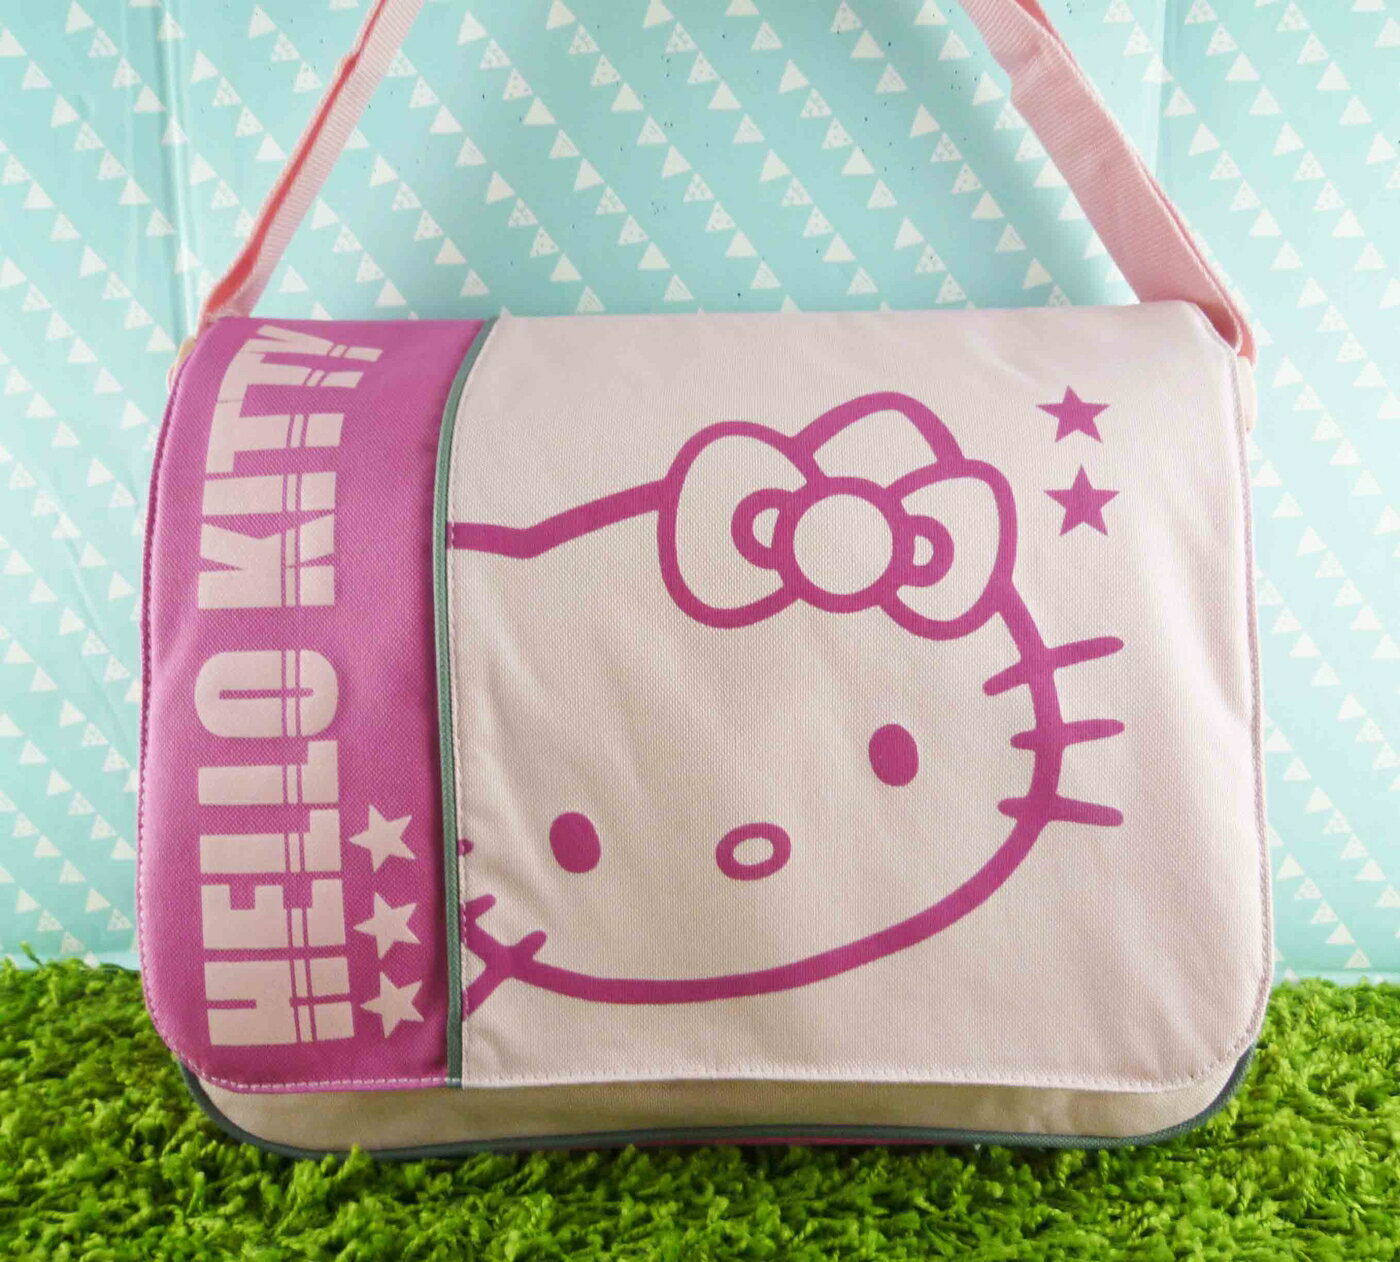 【震撼精品百貨】Hello Kitty 凱蒂貓 側背袋 粉星星【共1款】 震撼日式精品百貨